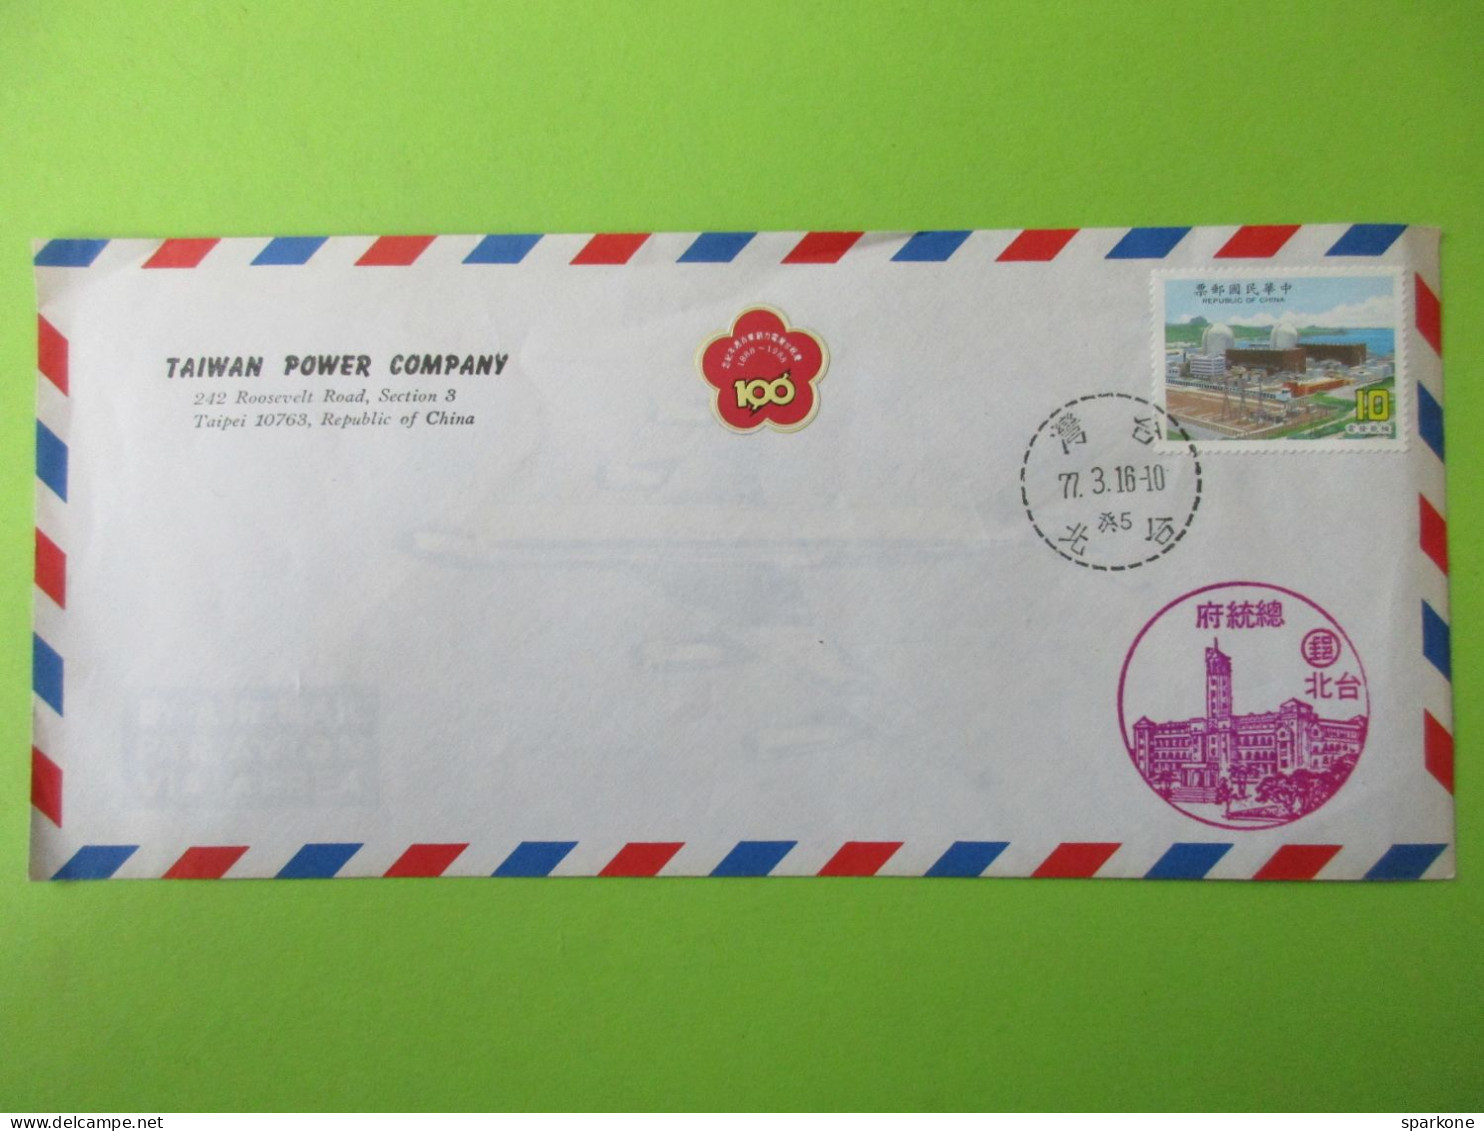 Marcophilie - Enveloppe - Républic Of China - Taïwan Power Compagny, Taipei - Oblitérés